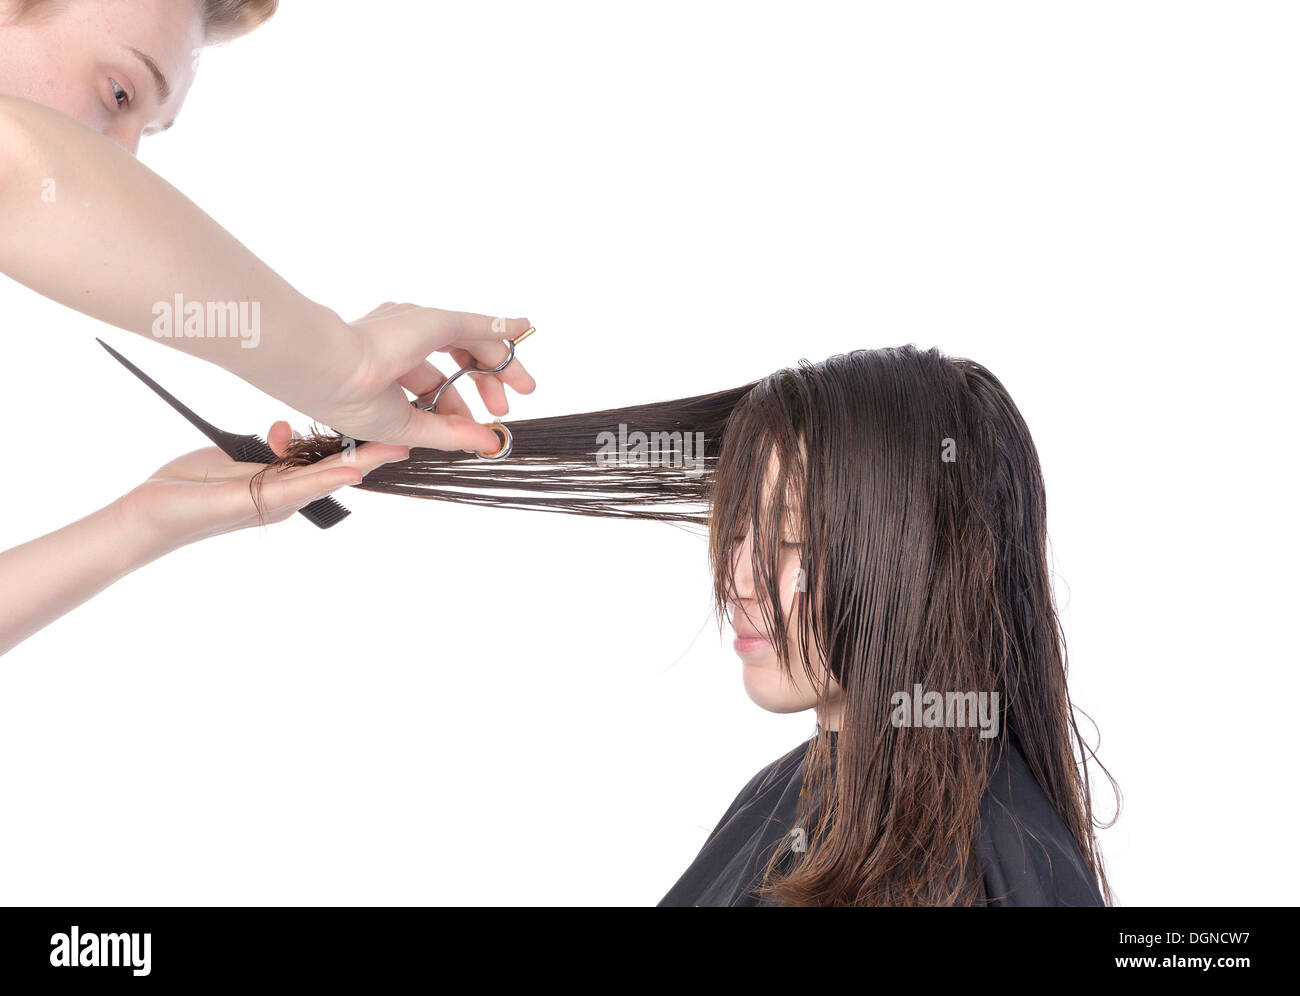 Jeune femme ayant une coupe de cheveux avec une coiffure sa coupe bordure sur sa longue chevelure brune, isolated on white Banque D'Images